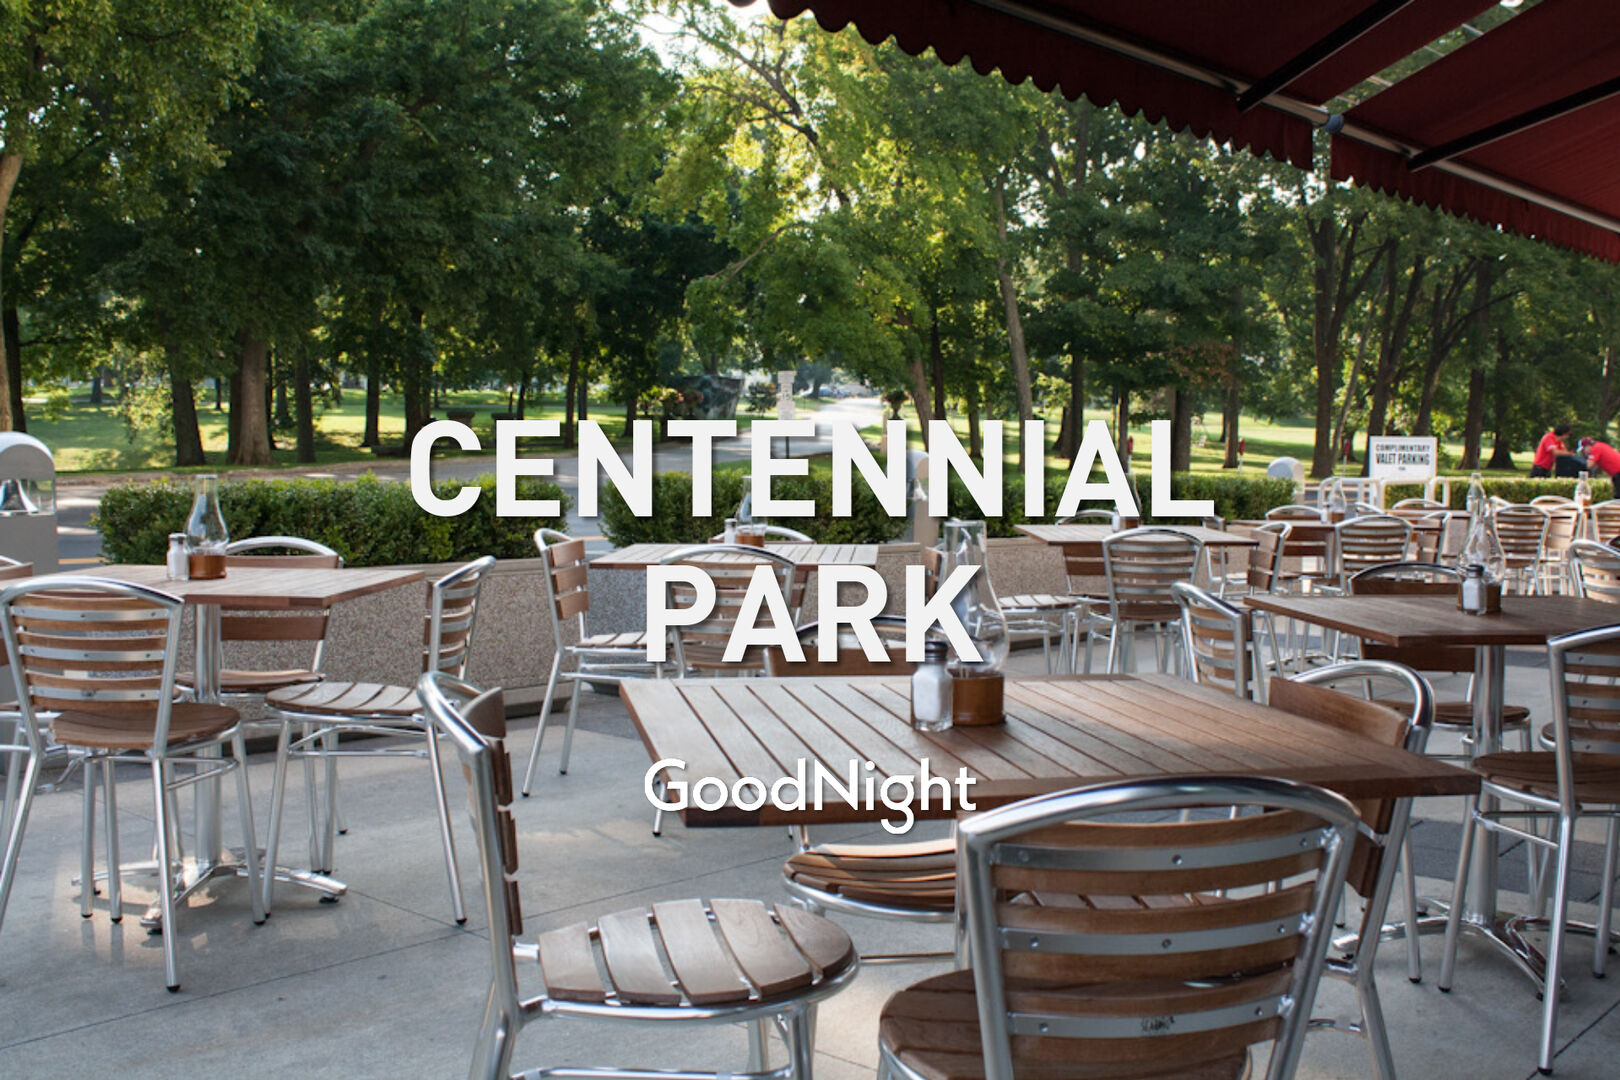 30 mins: Centennial Park